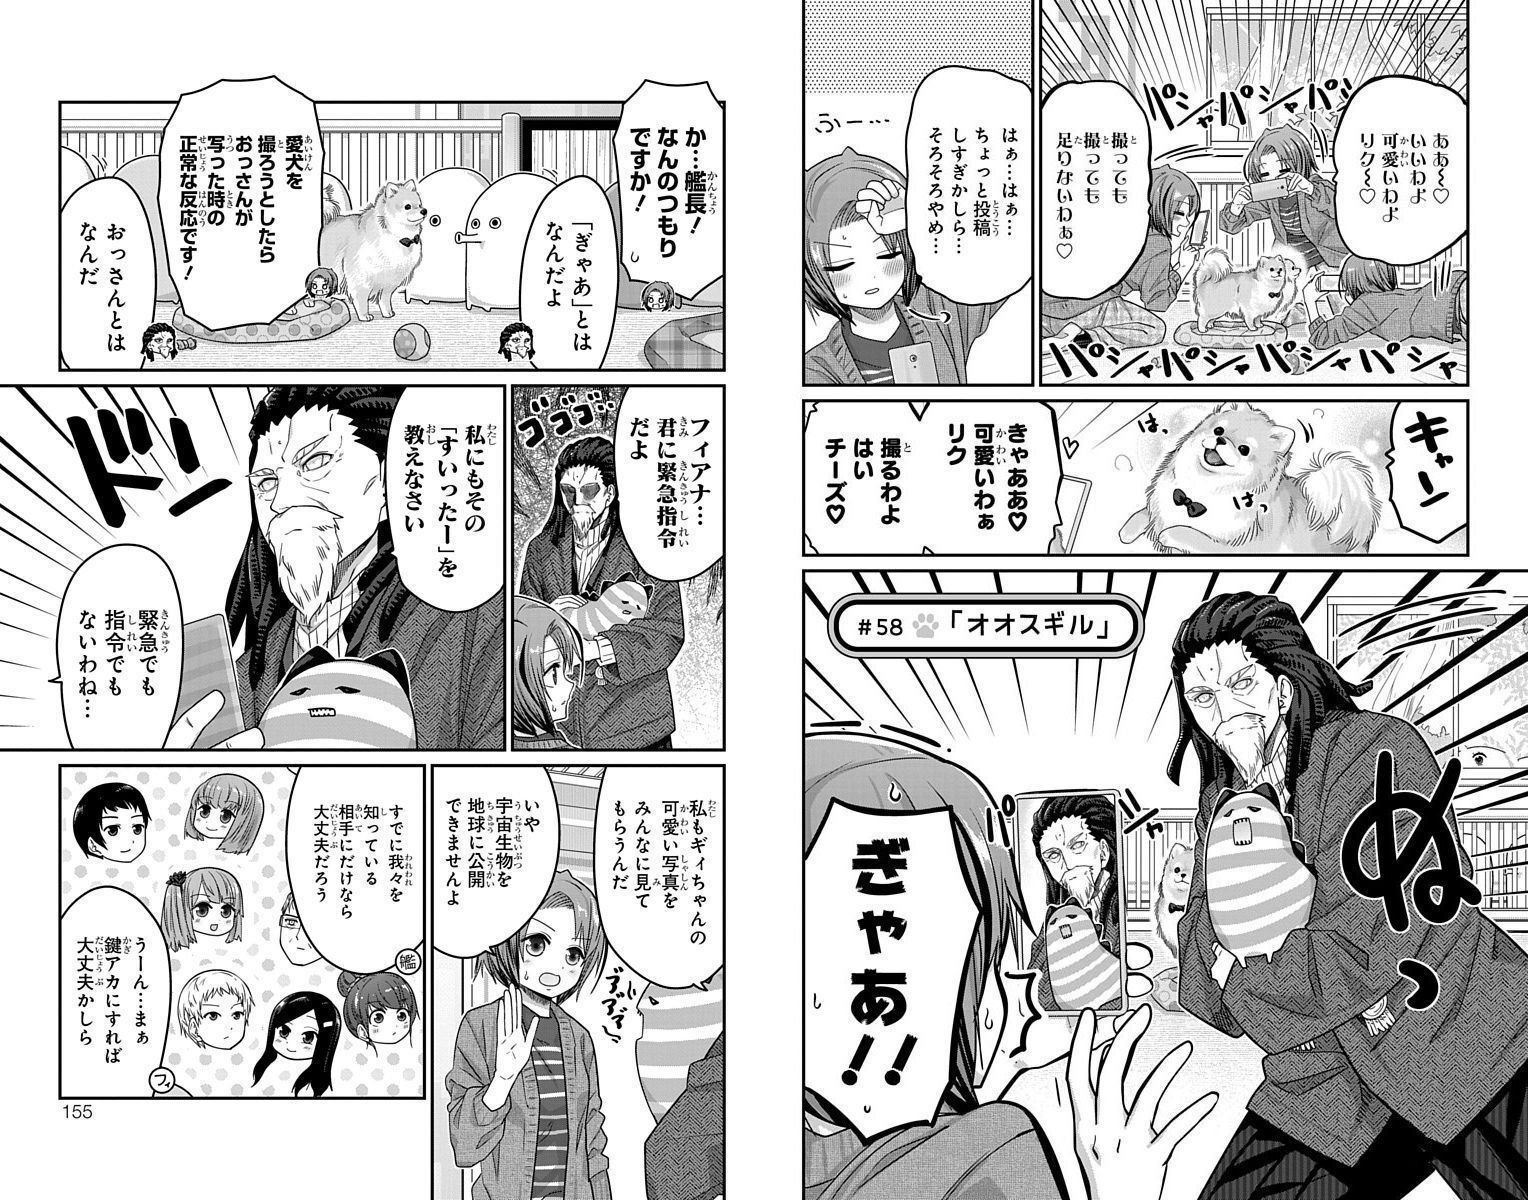 Kawaisugi Crisis - Chapter 58 - Page 1